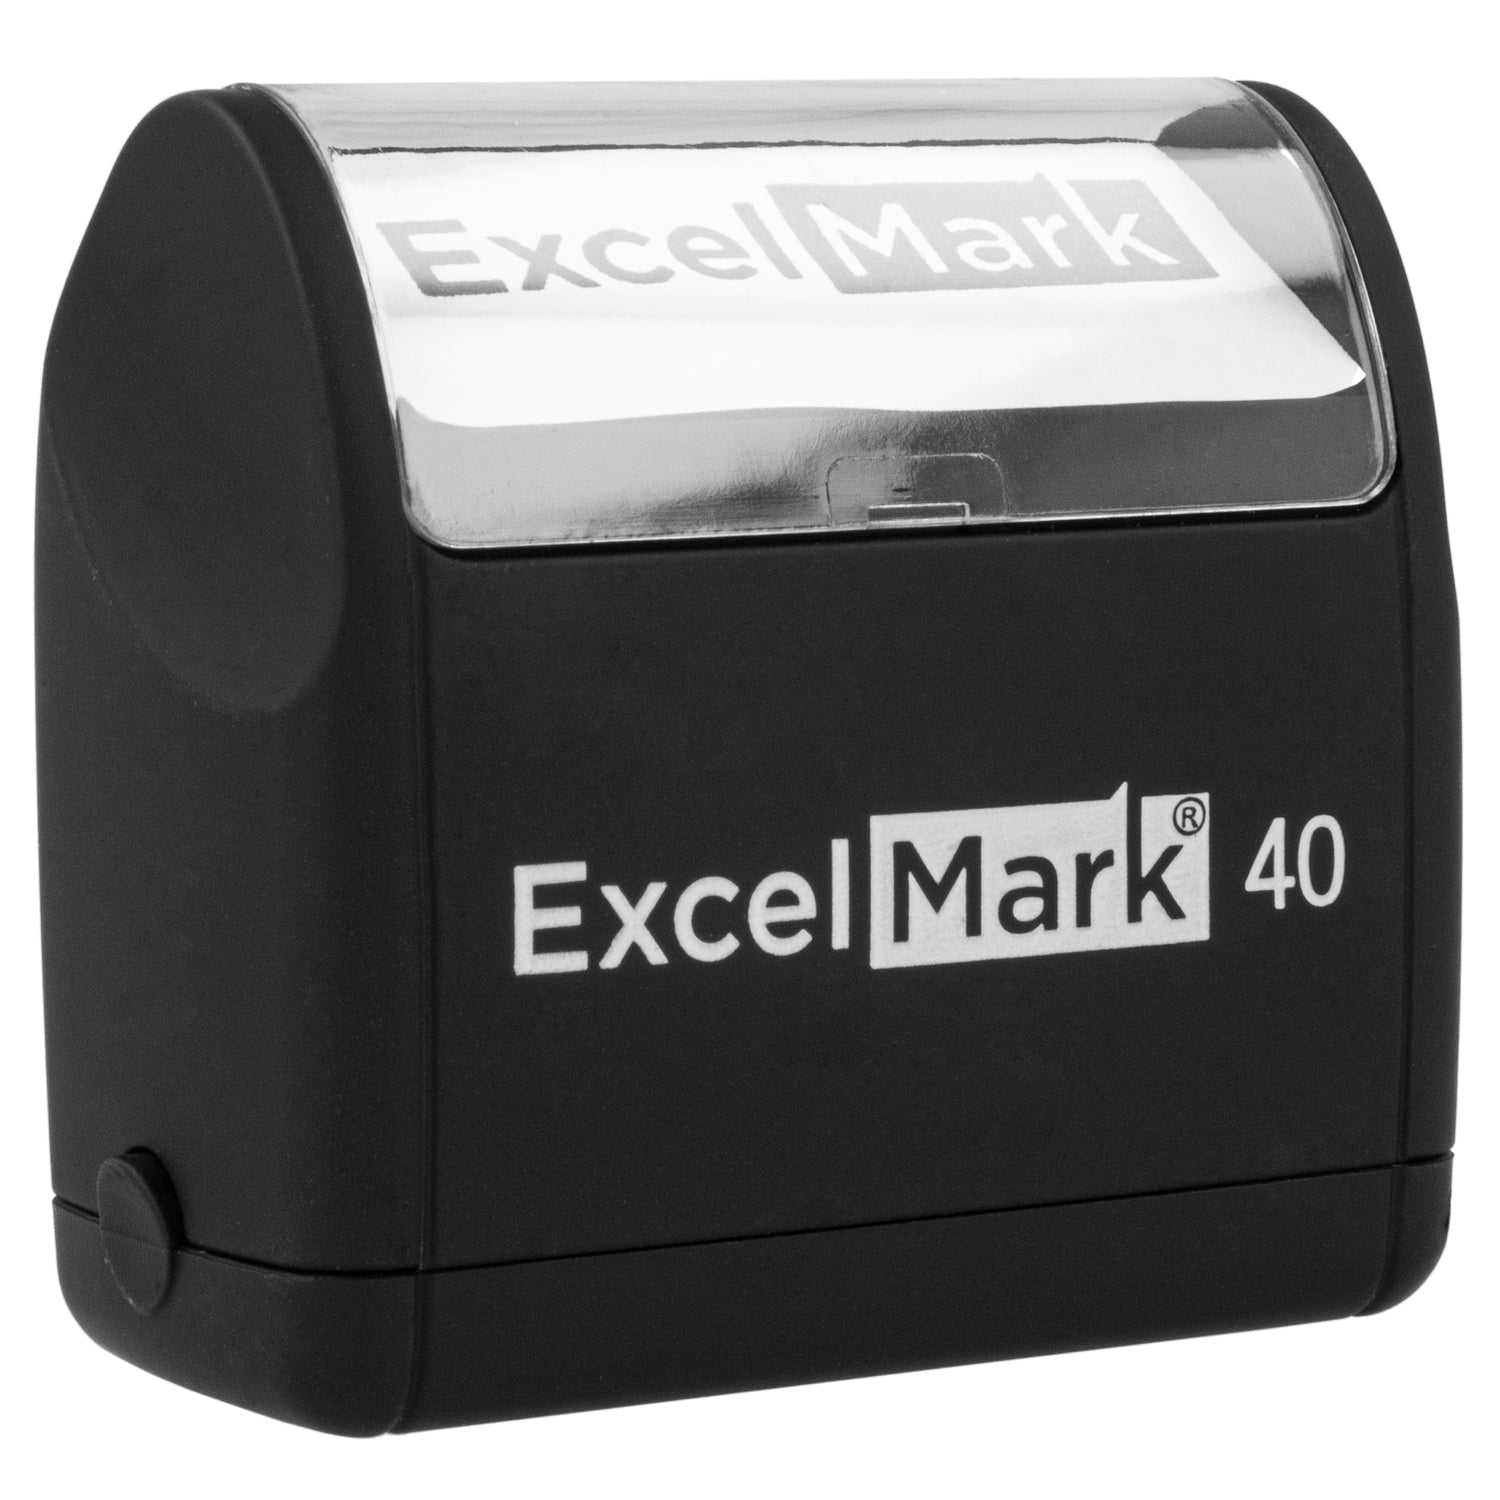  ExcelMark Custom Rectangular Signature Stamp - Self